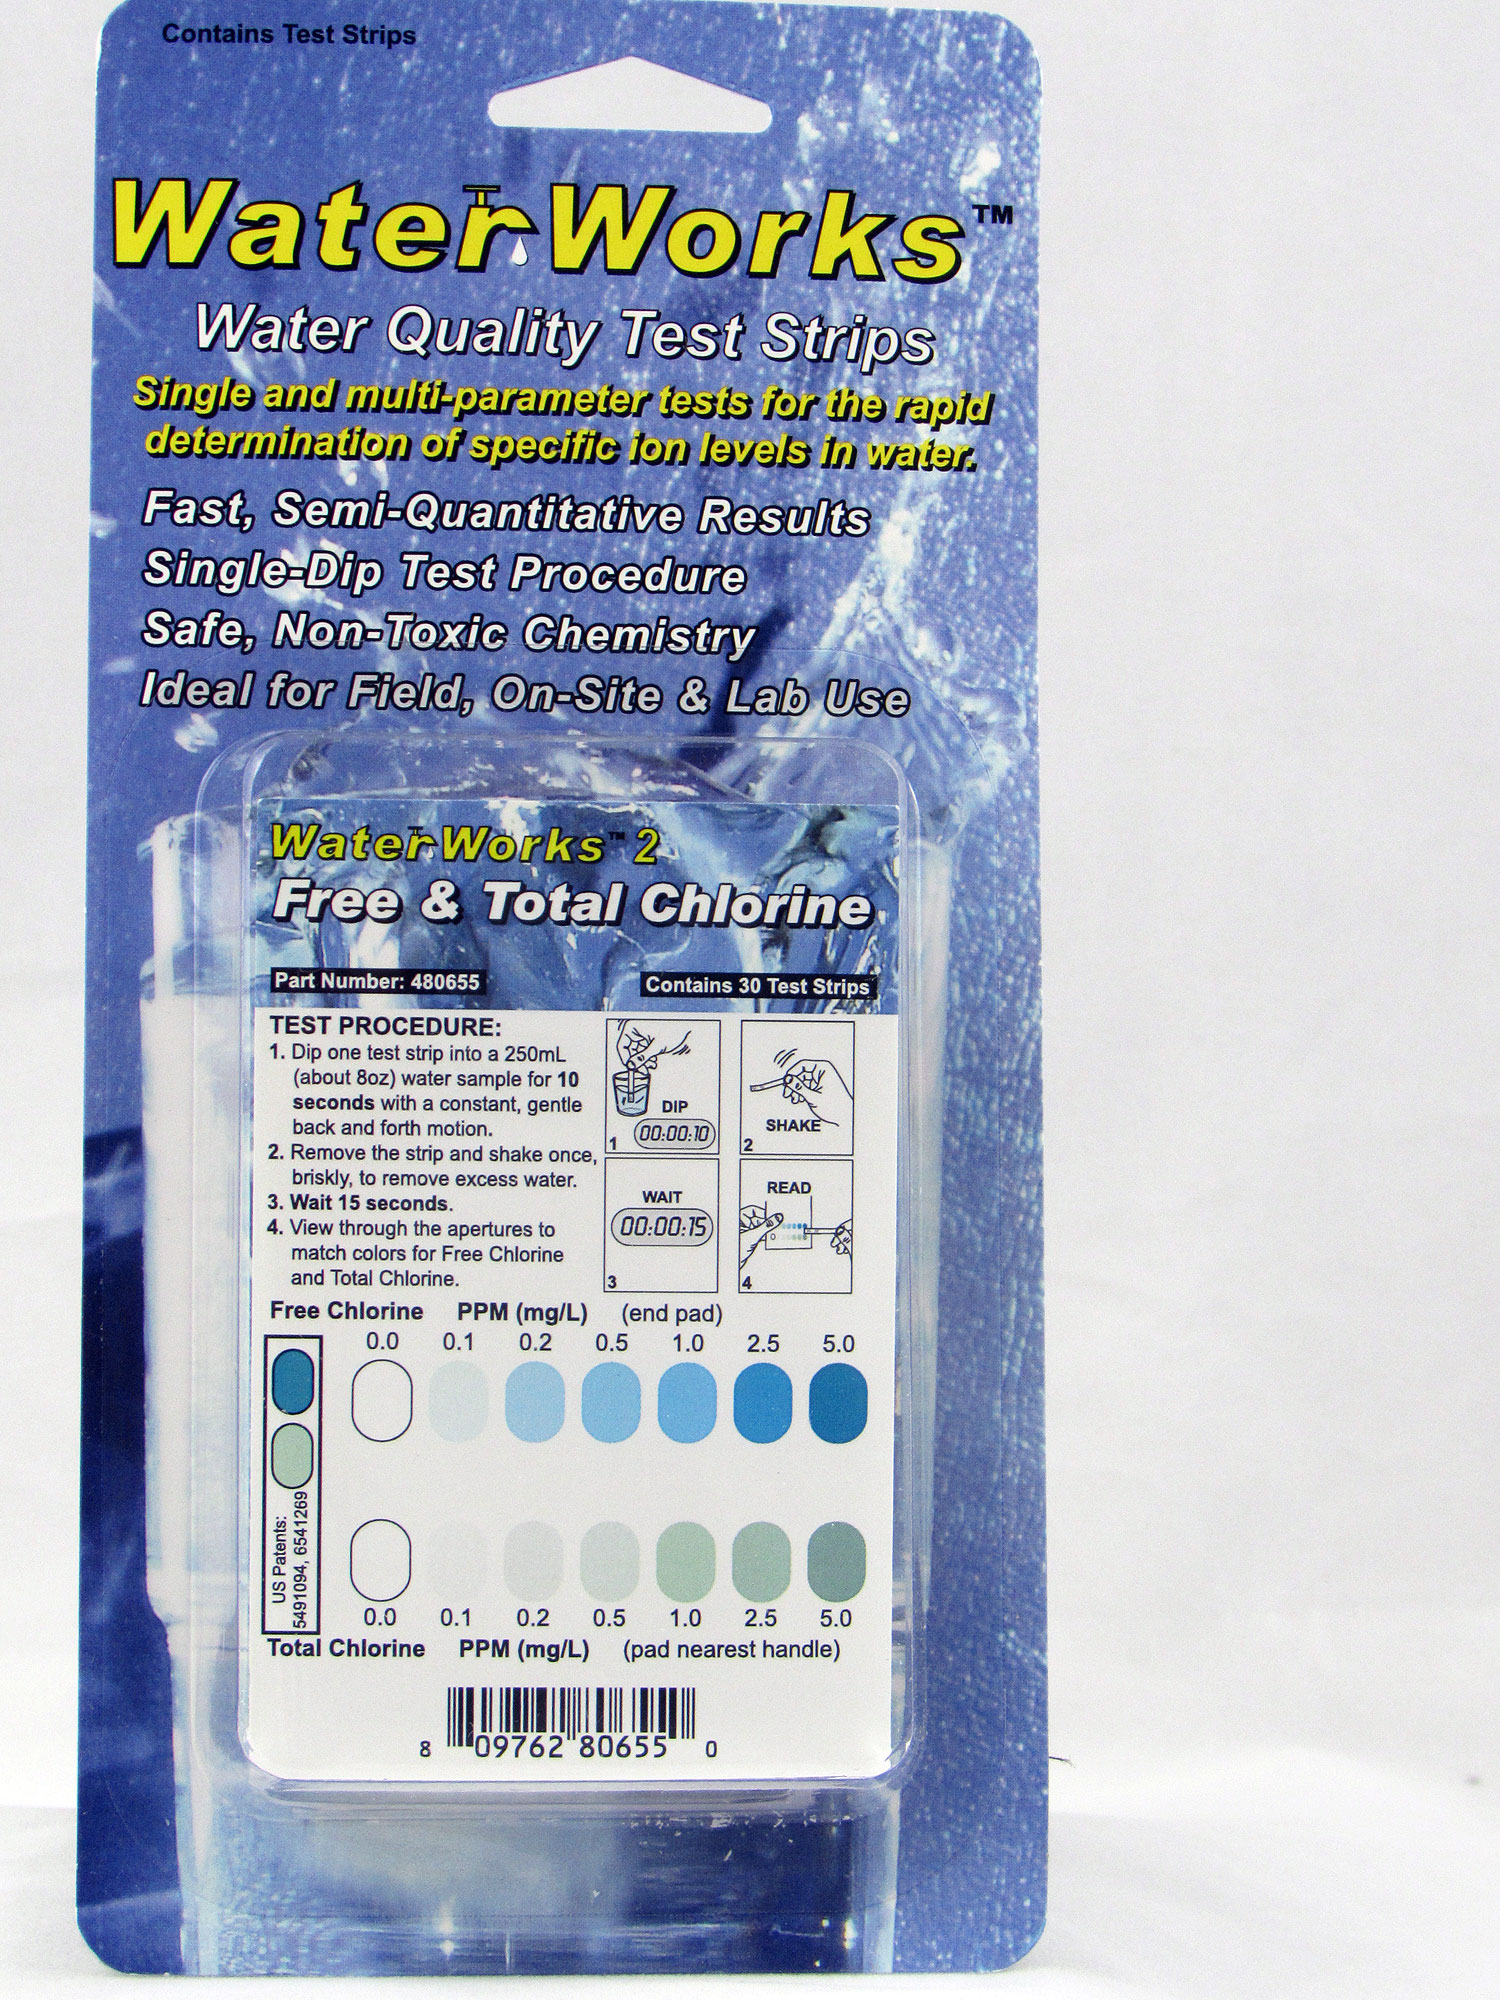 WaterWorks 2 Free & Total Chlorine Test Strips (480655)